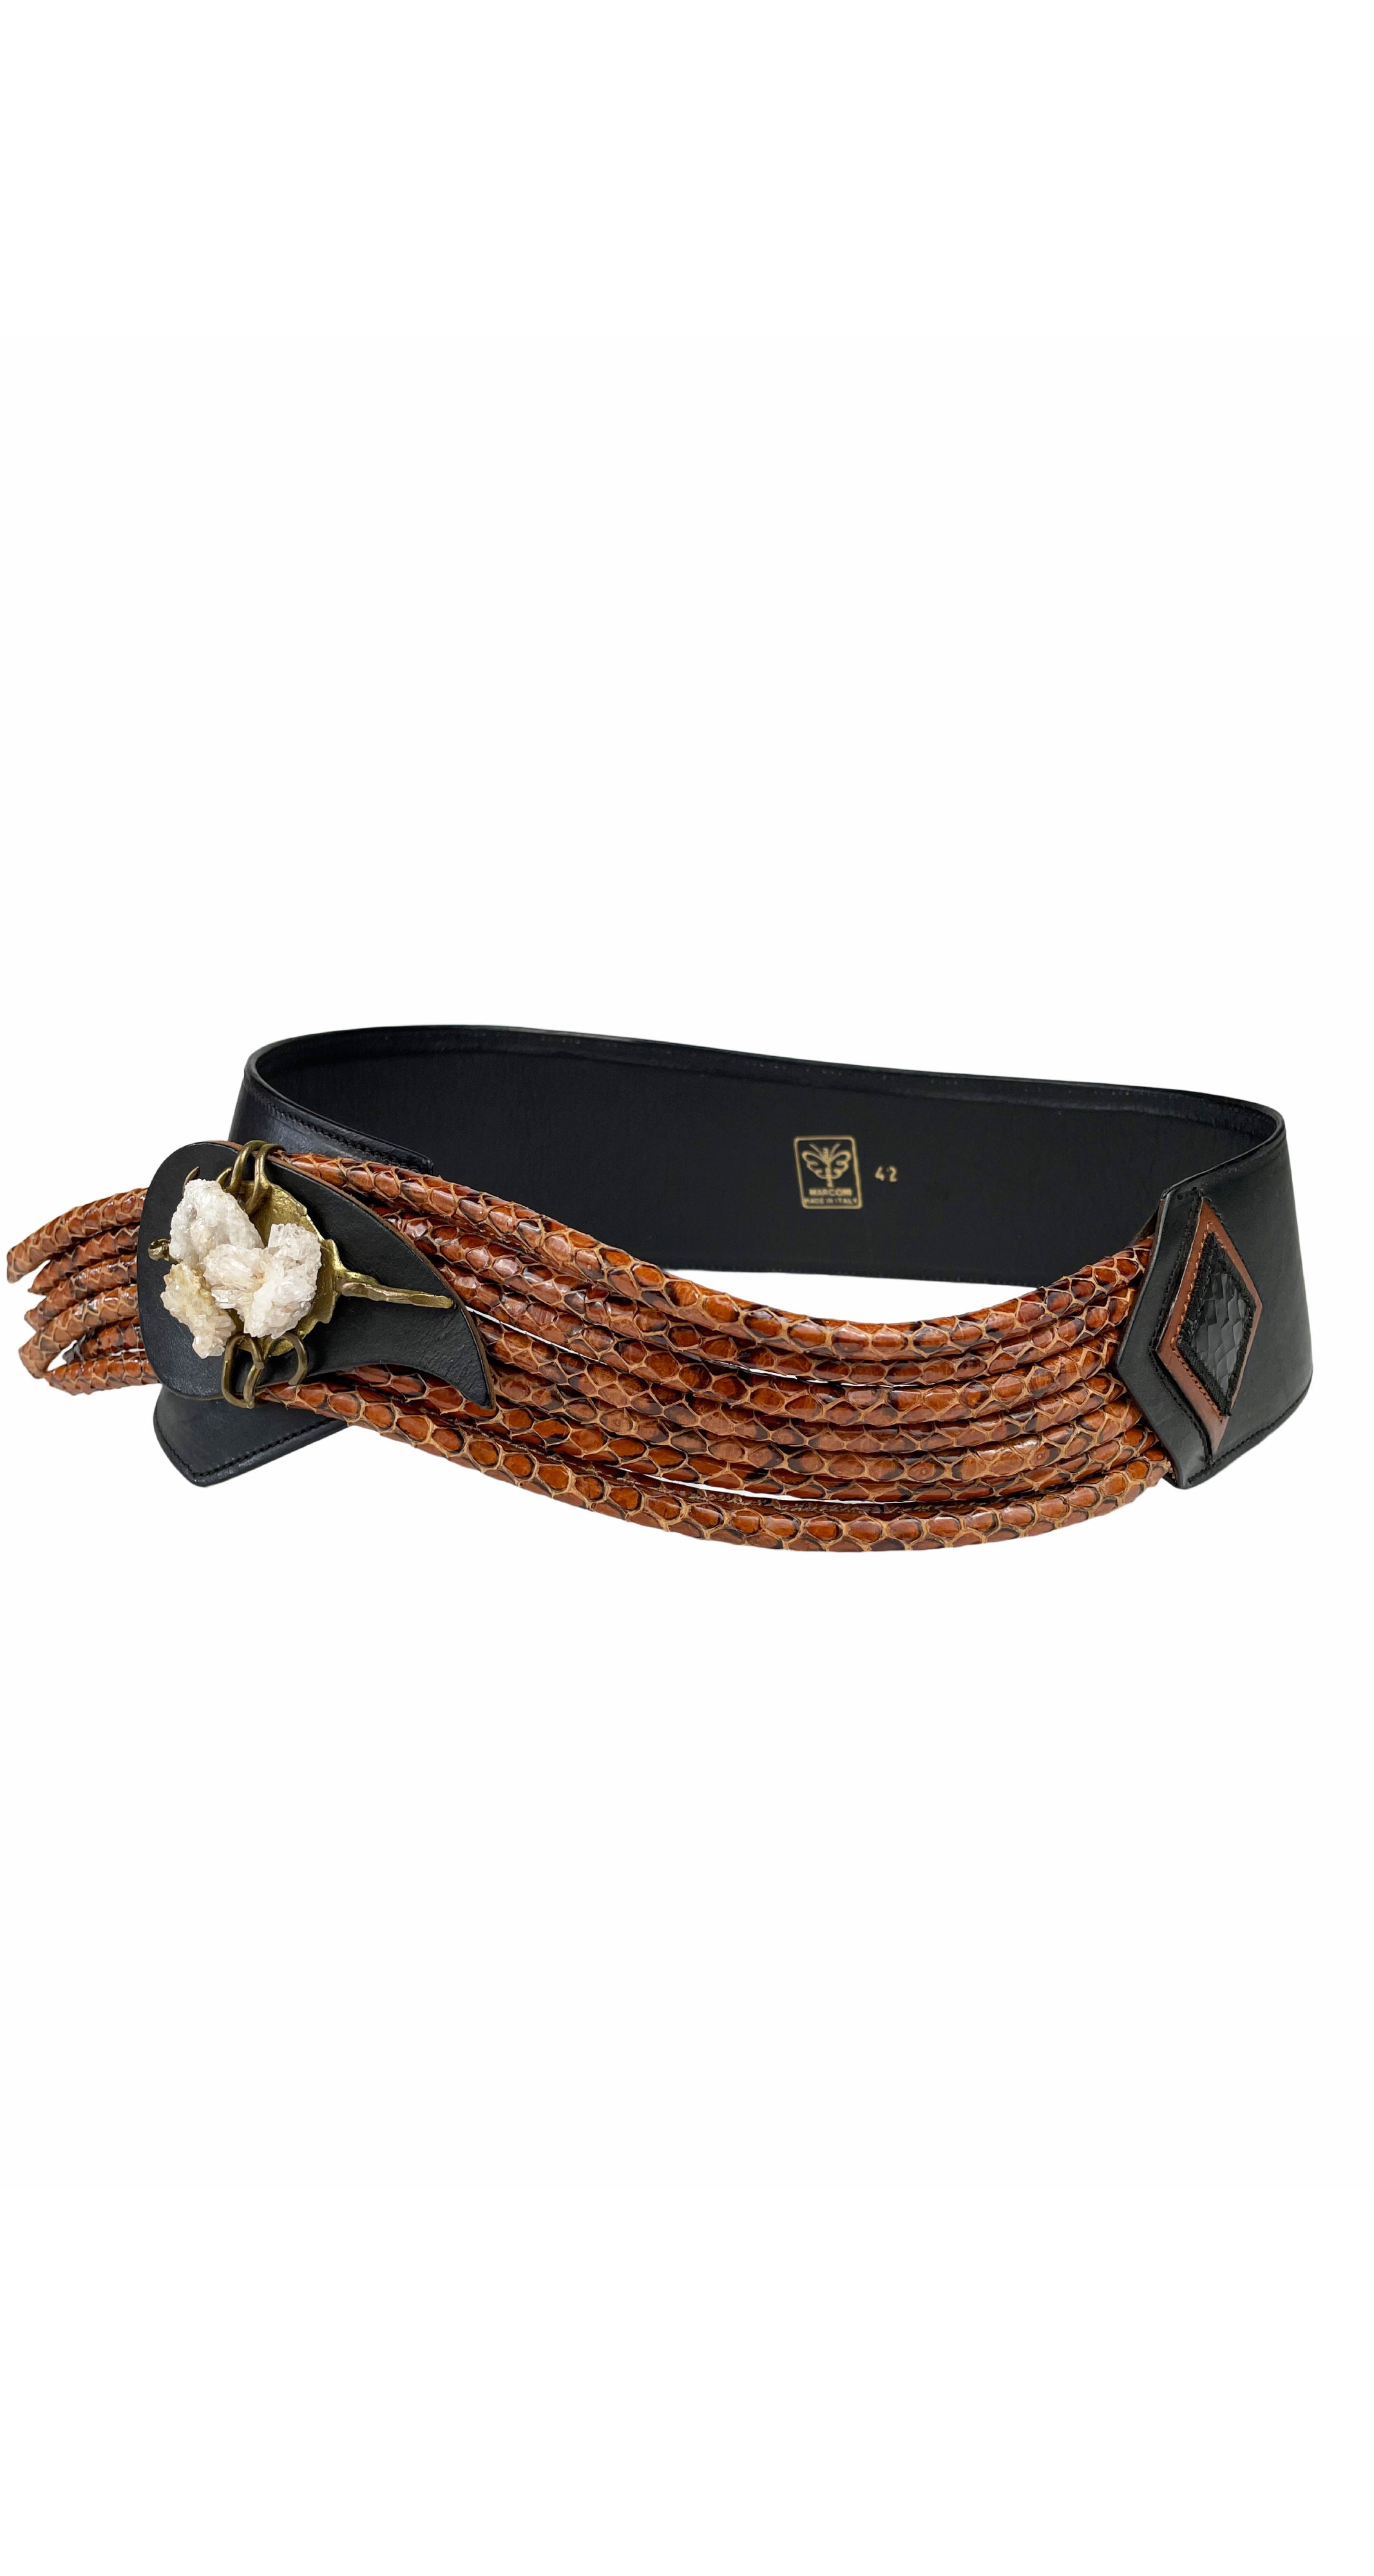 1980s Snakeskin Rope Wide Black Leather Belt